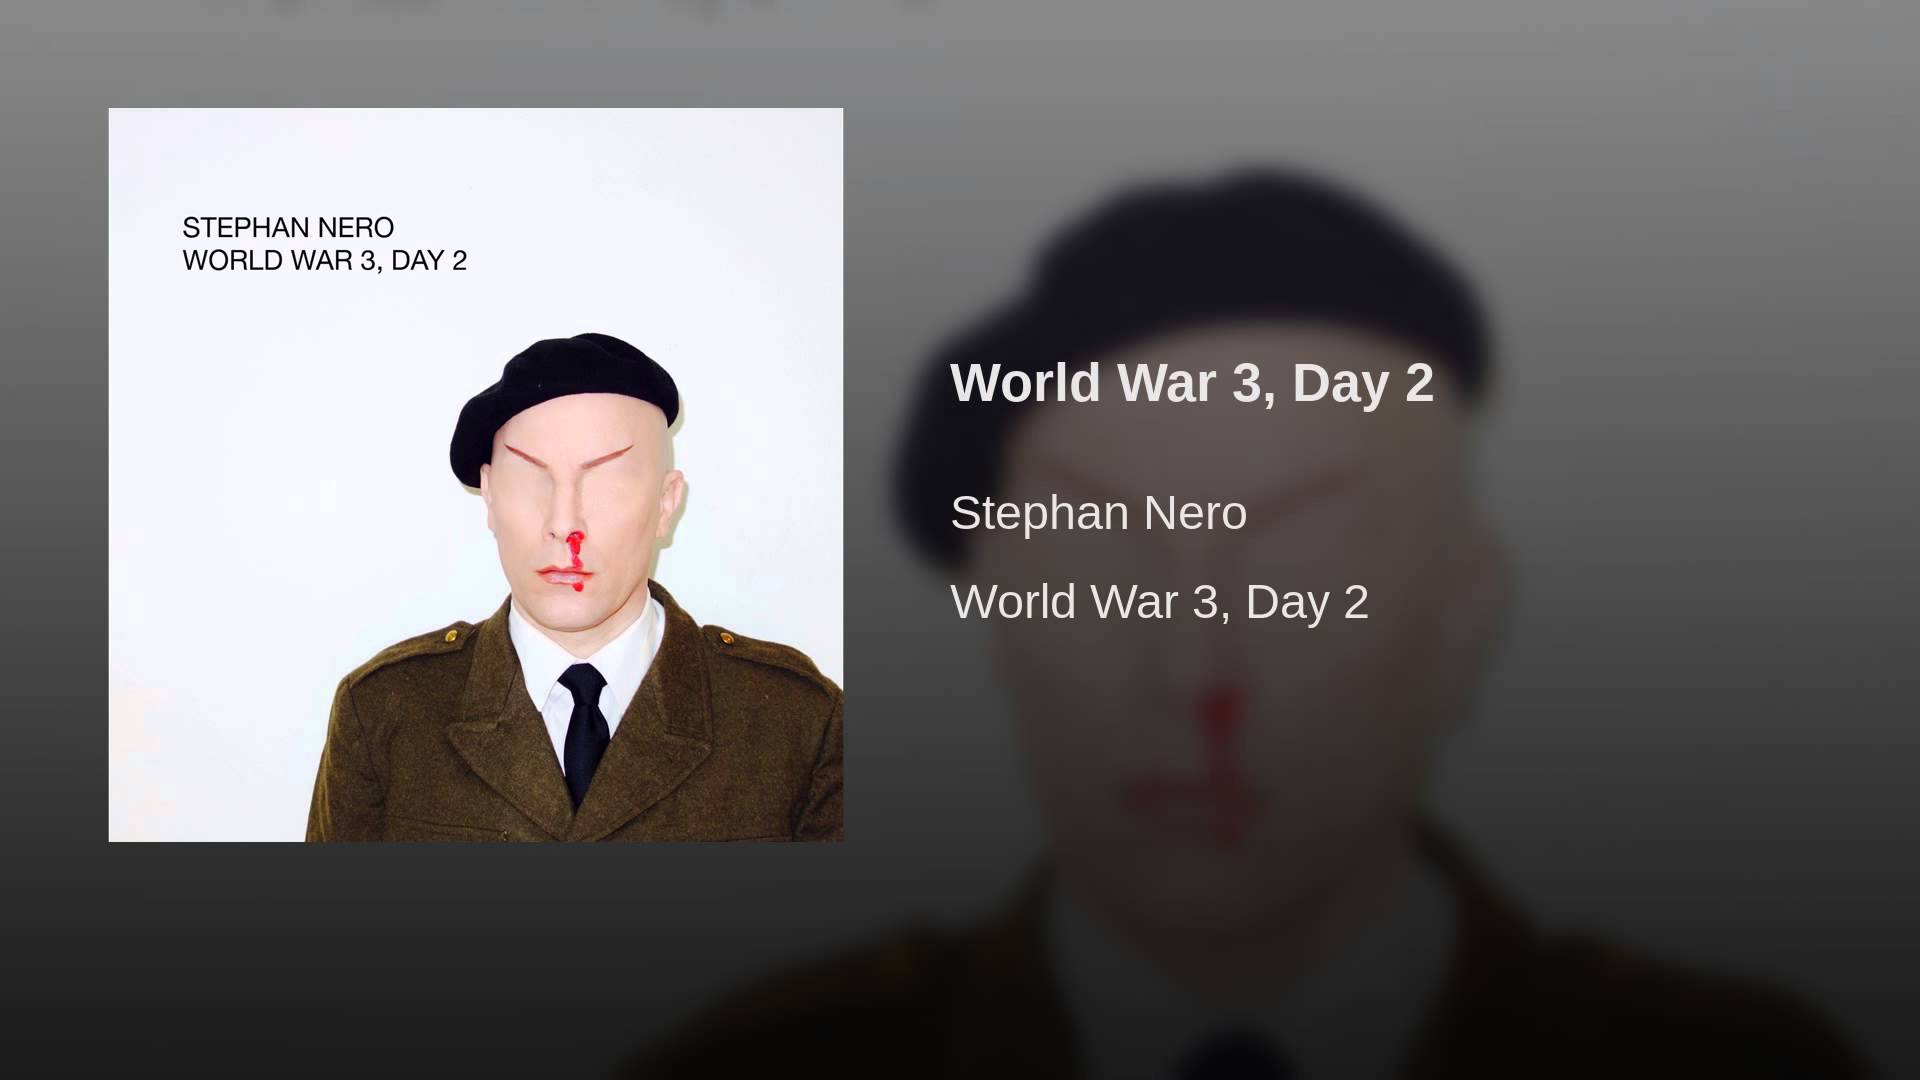 World War 3, Day 2